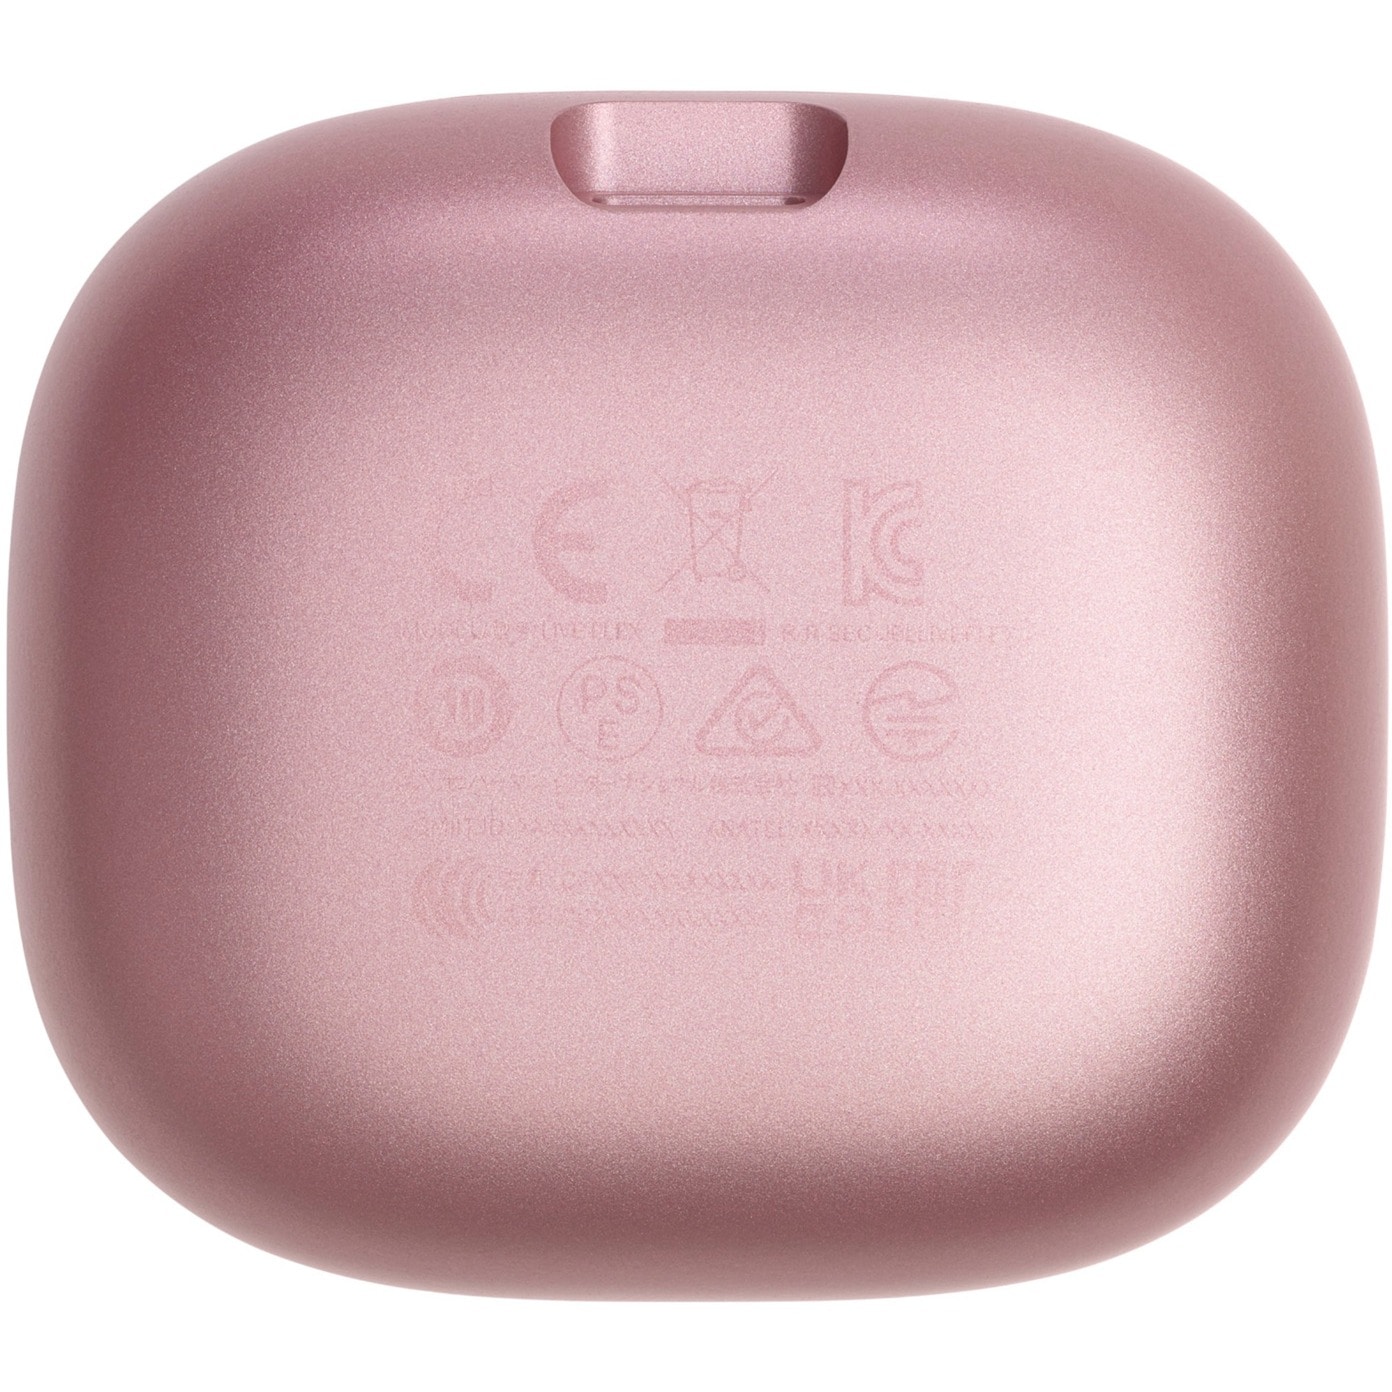 JBL LIVE Flex In-Ear Bluetooth rosa Kopfhörer ++ Cyberport Wireless True